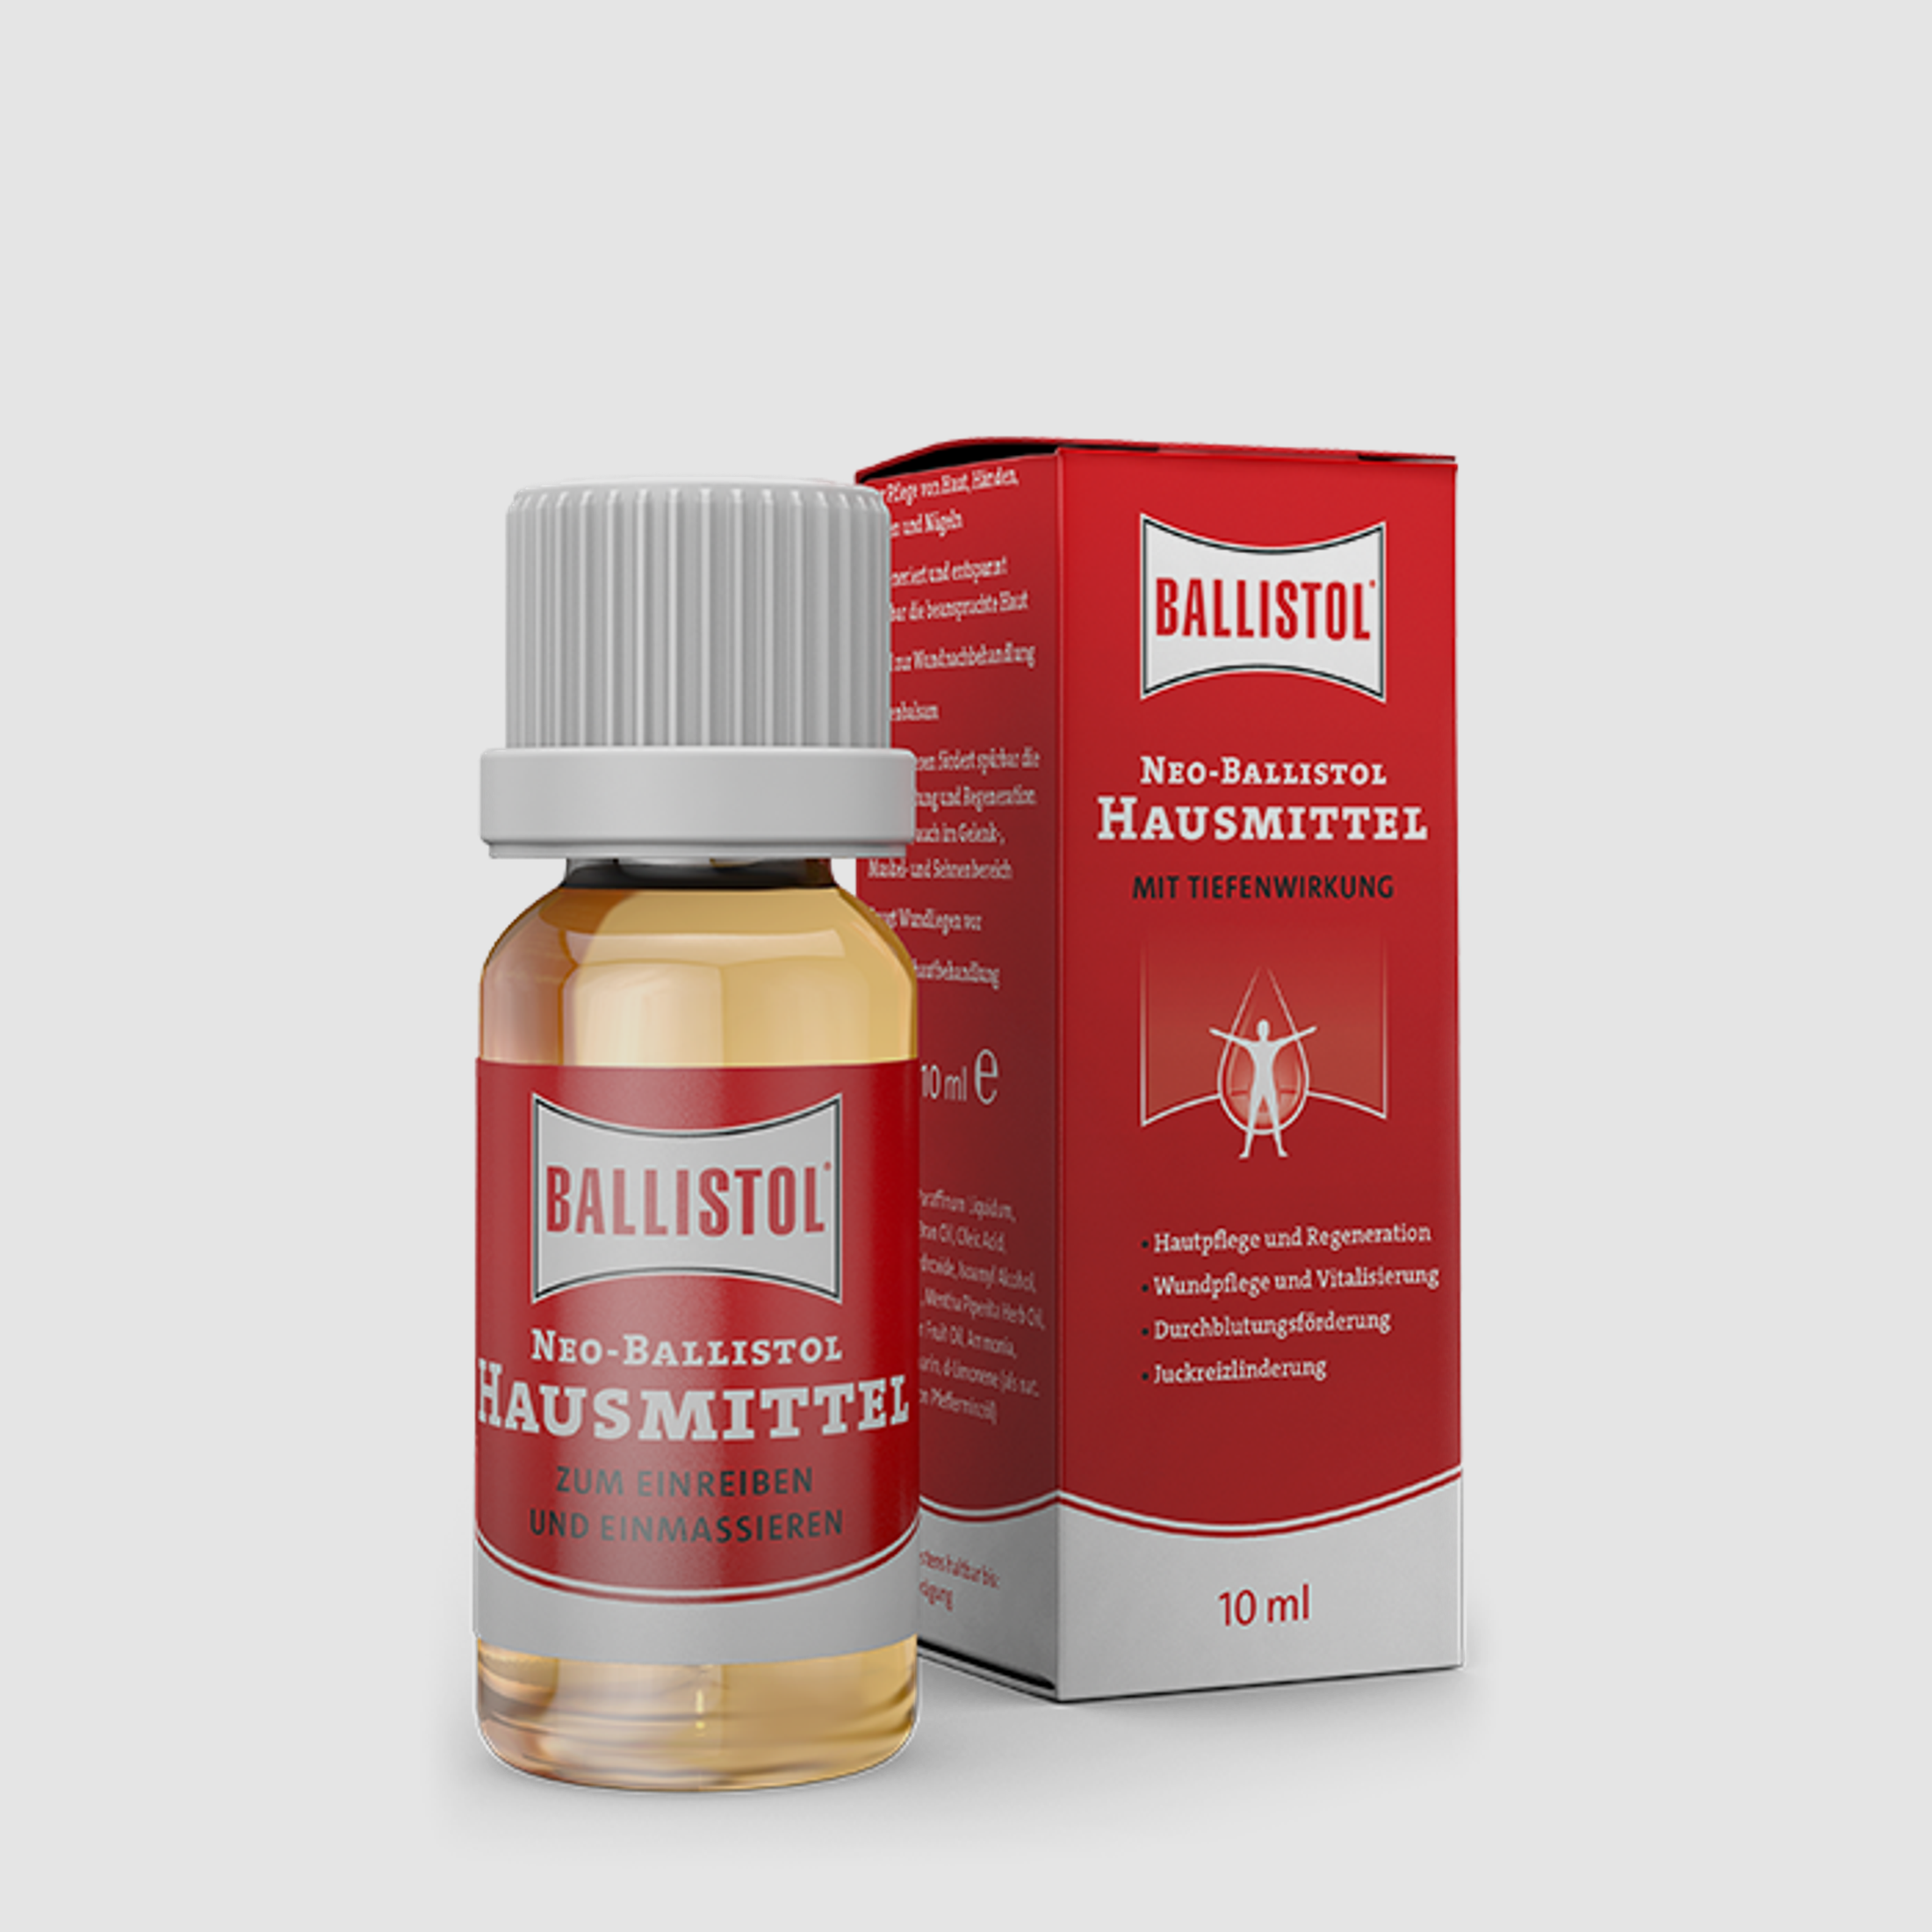 Ballistol Neo-Ballistol Hausmittel 10 ml